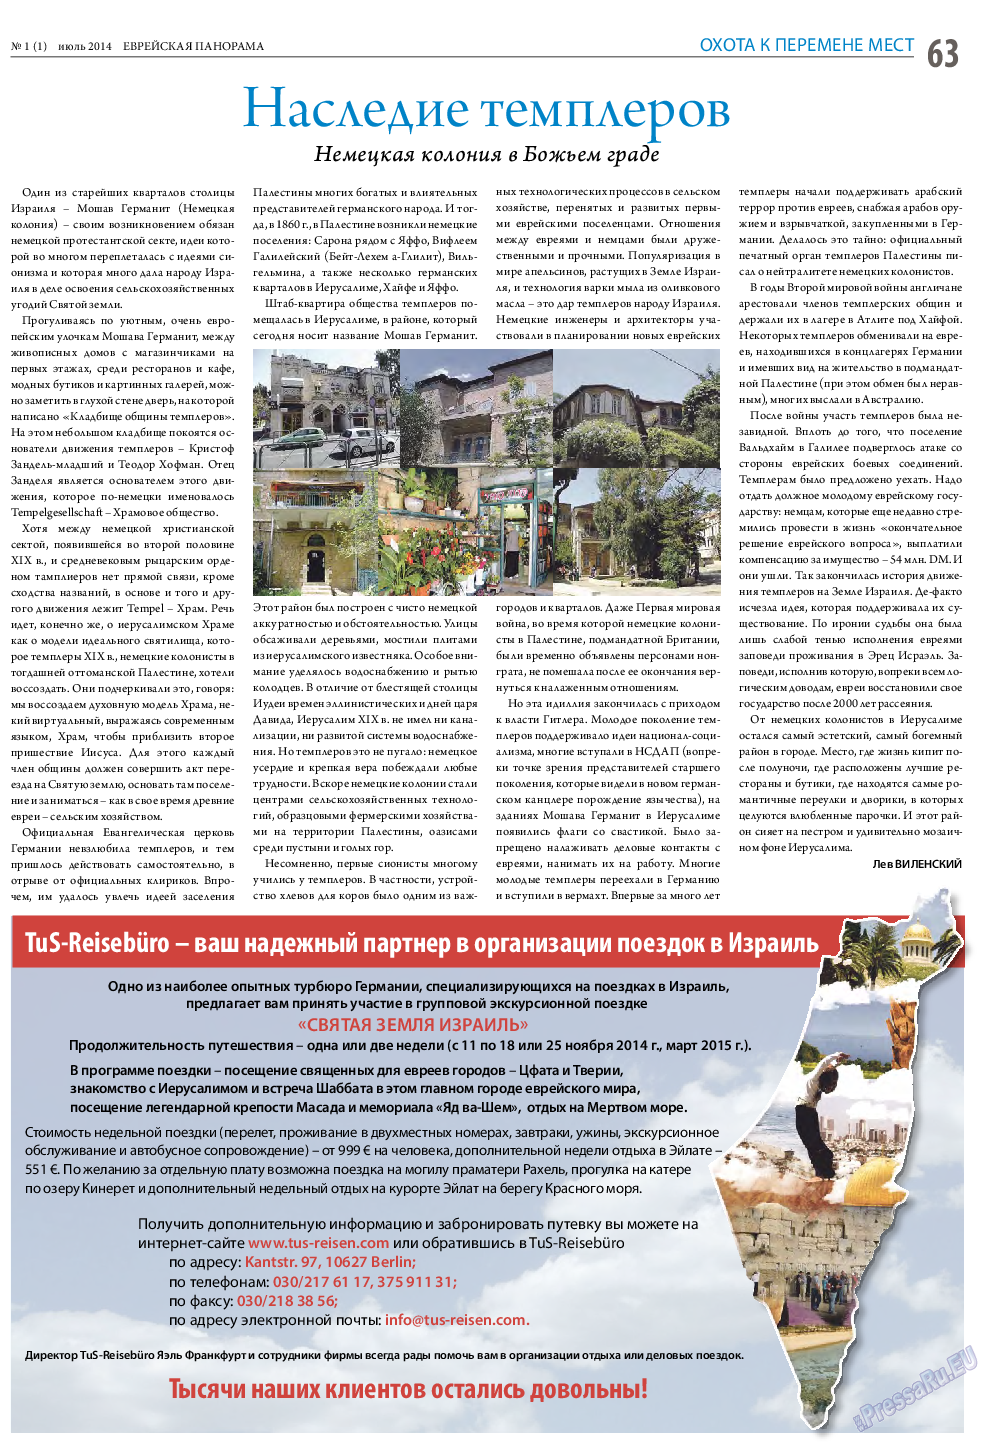 Еврейская панорама (газета). 2014 год, номер 1, стр. 63